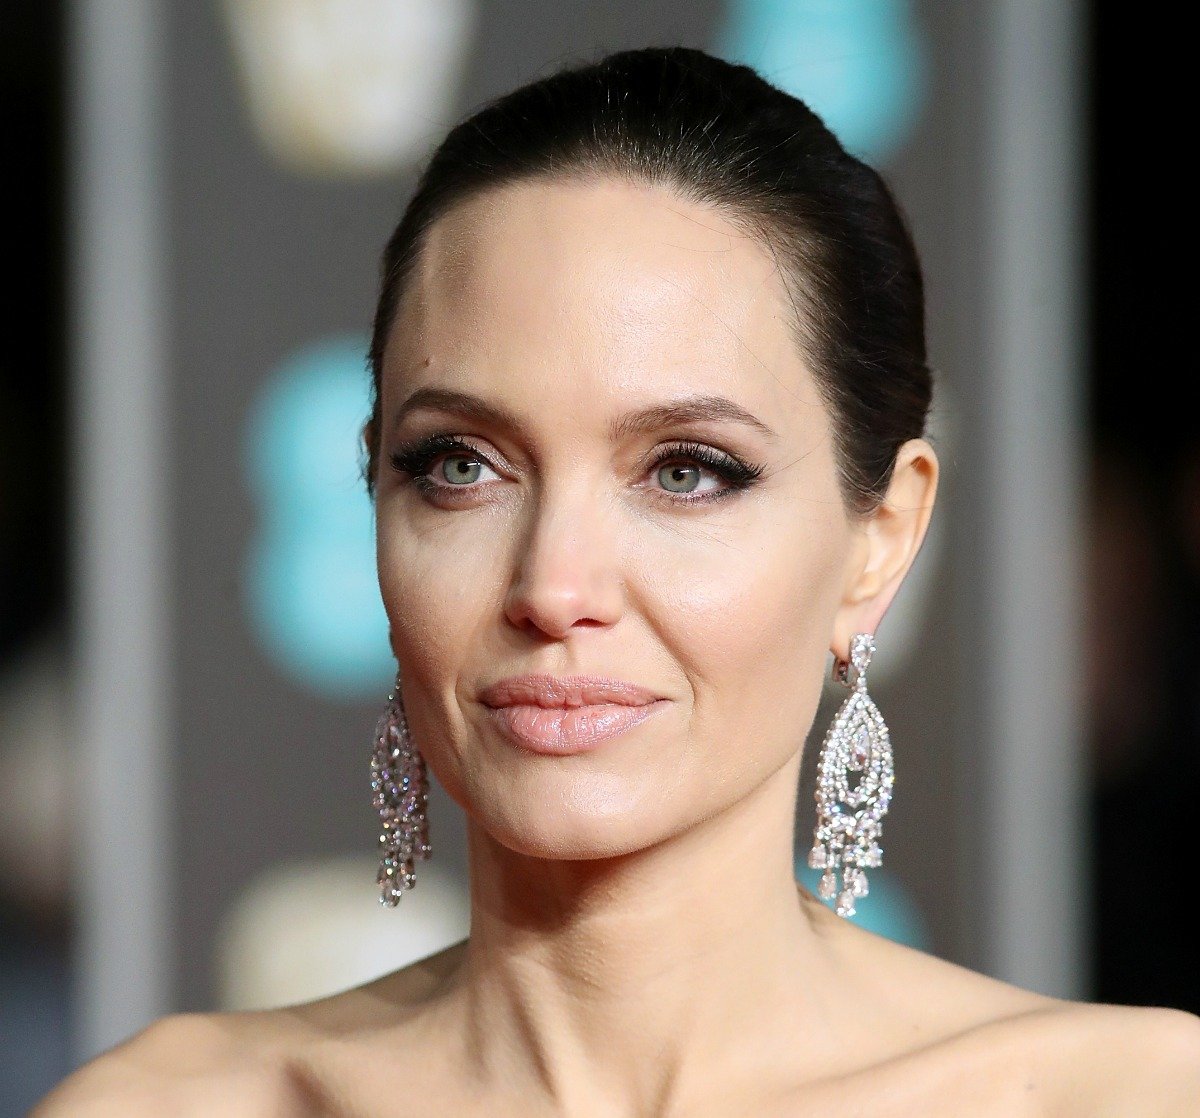 BAFTAS-Angelina-Jolie-nude-lip